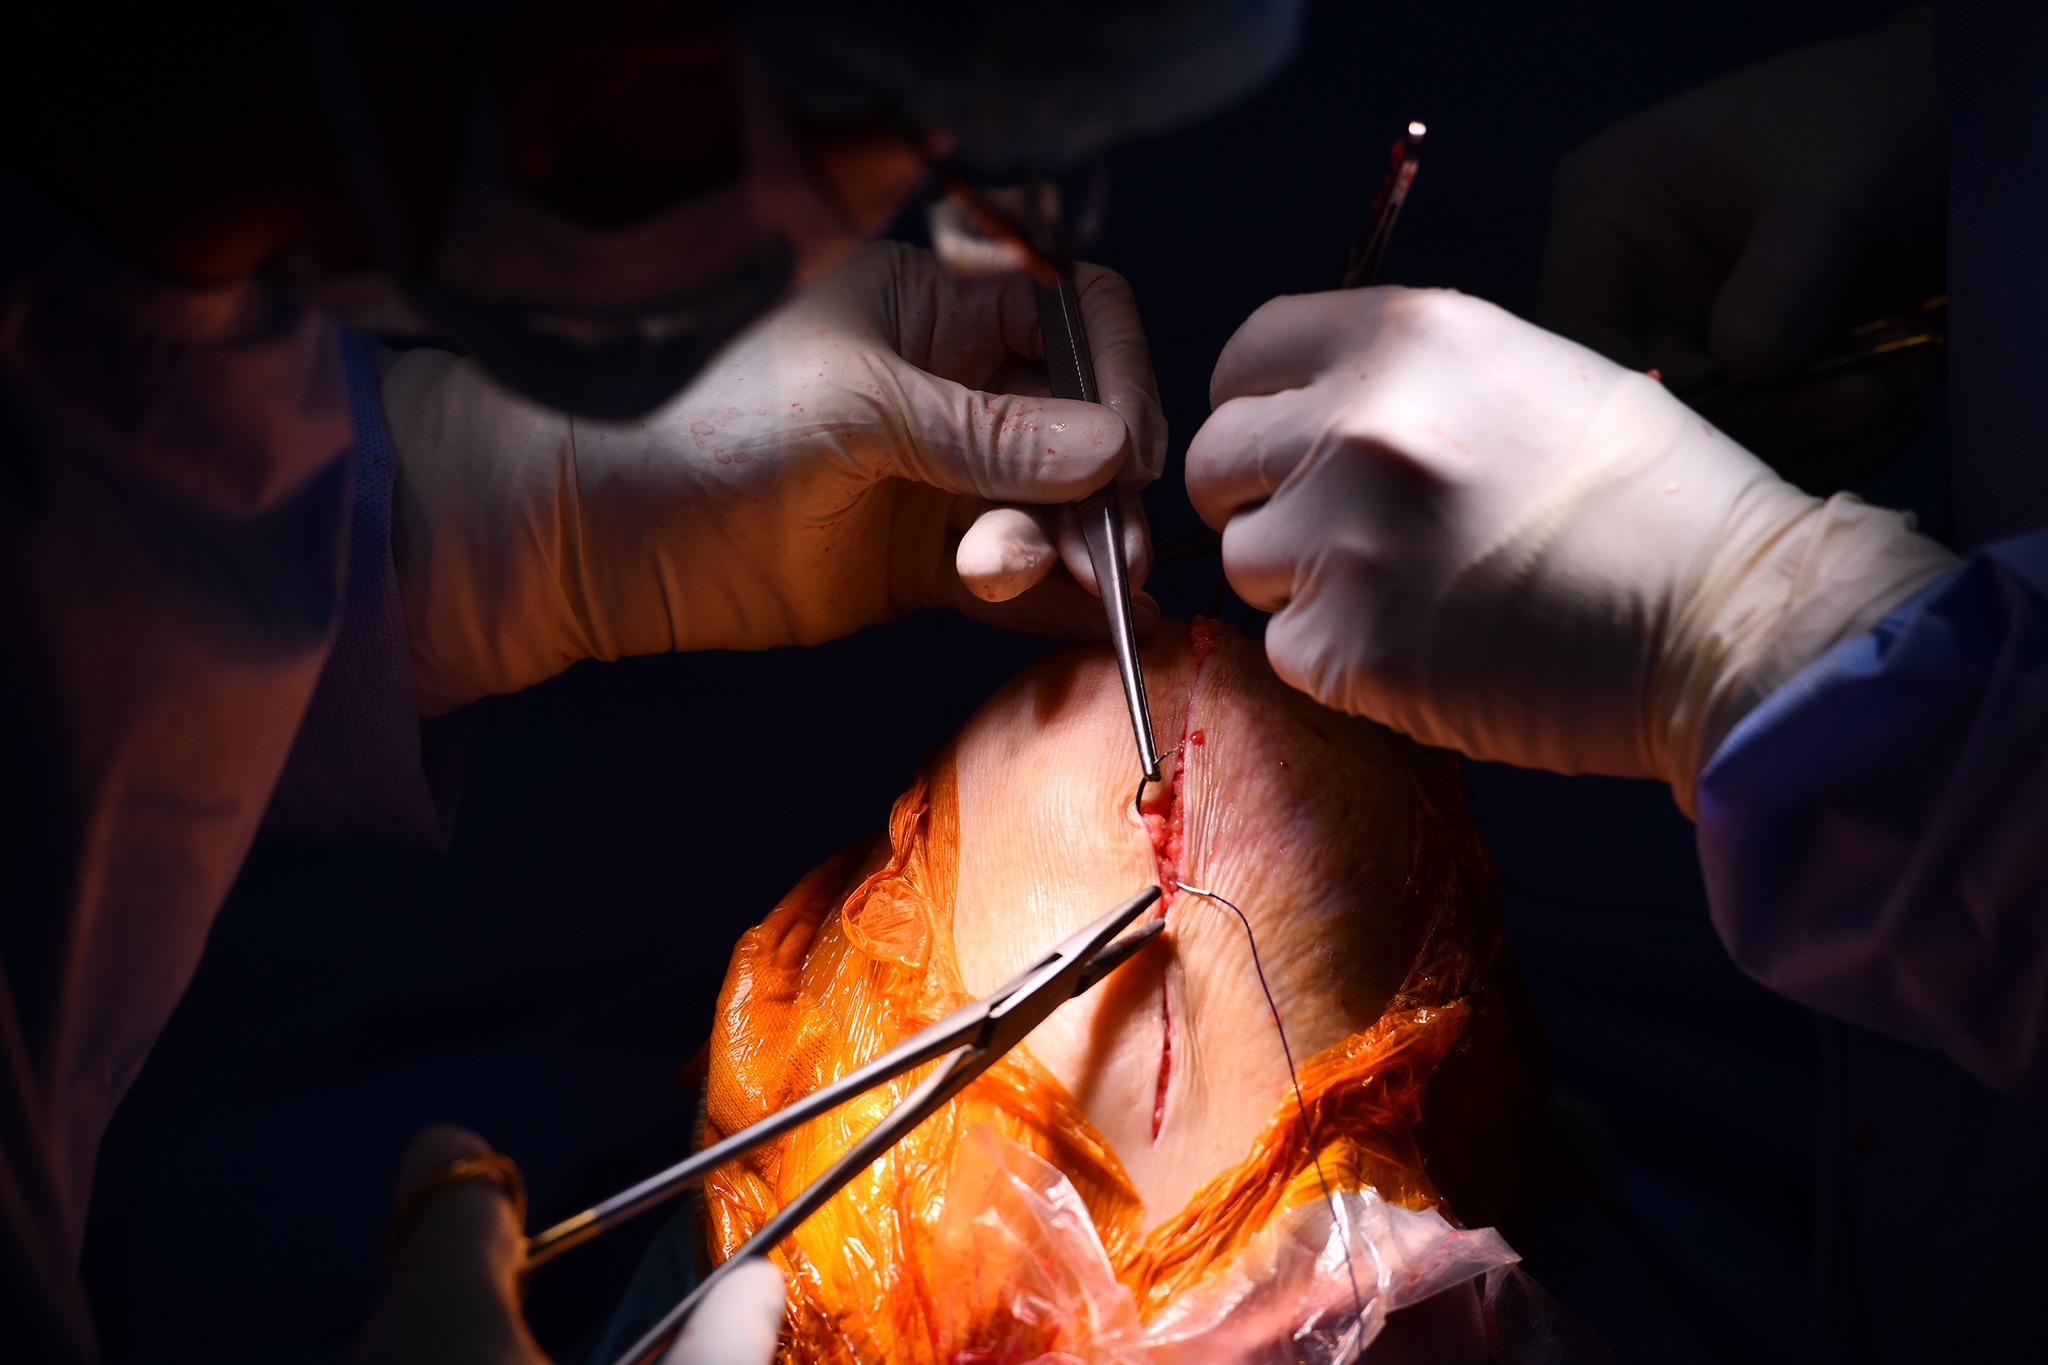 Ứng dụng công nghệ thực tế ảo trong phẫu thuật thay khớp gối-19